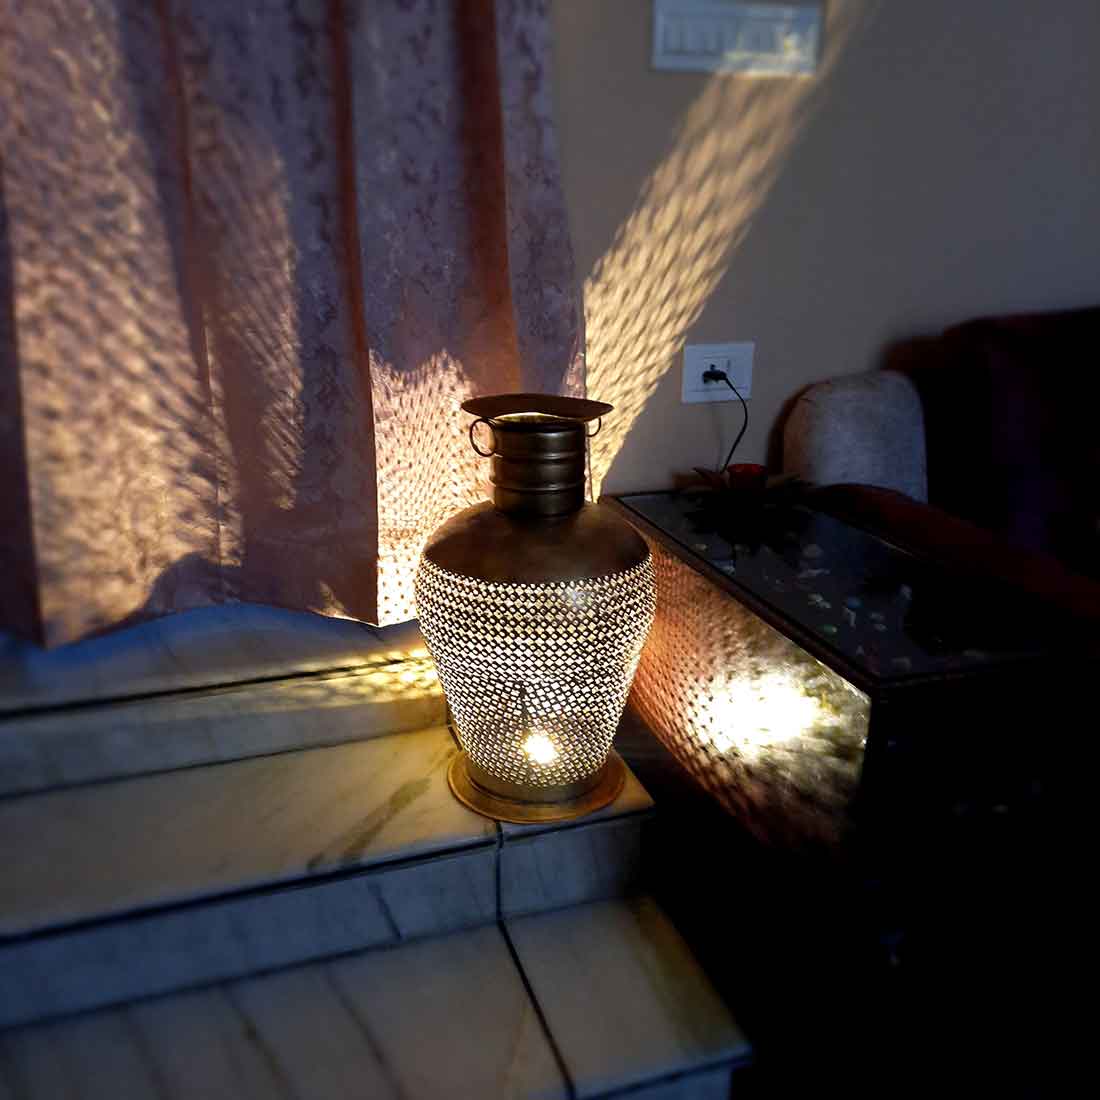 Vase With LED Lights | Flower Pot Cum Lamp | Vintage Vases - for Home, Living Room, Bedroom, Corner Decor & Gifts - 20 Inch